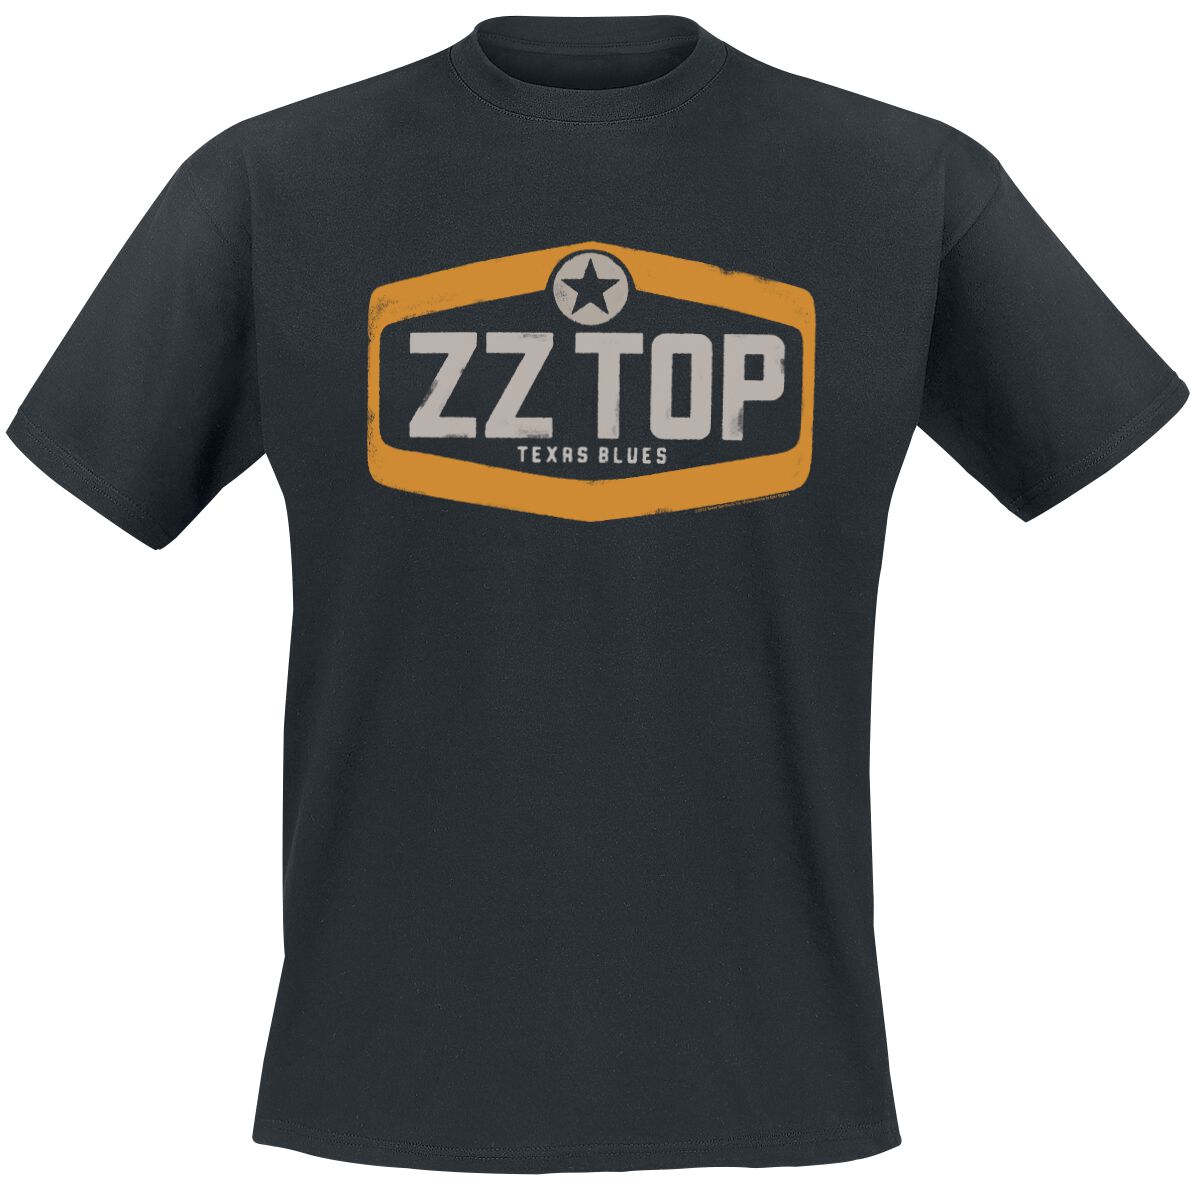 ZZ Top T-Shirt - Texas Blues - S bis XL - für Männer - Größe S - schwarz  - Lizenziertes Merchandise!